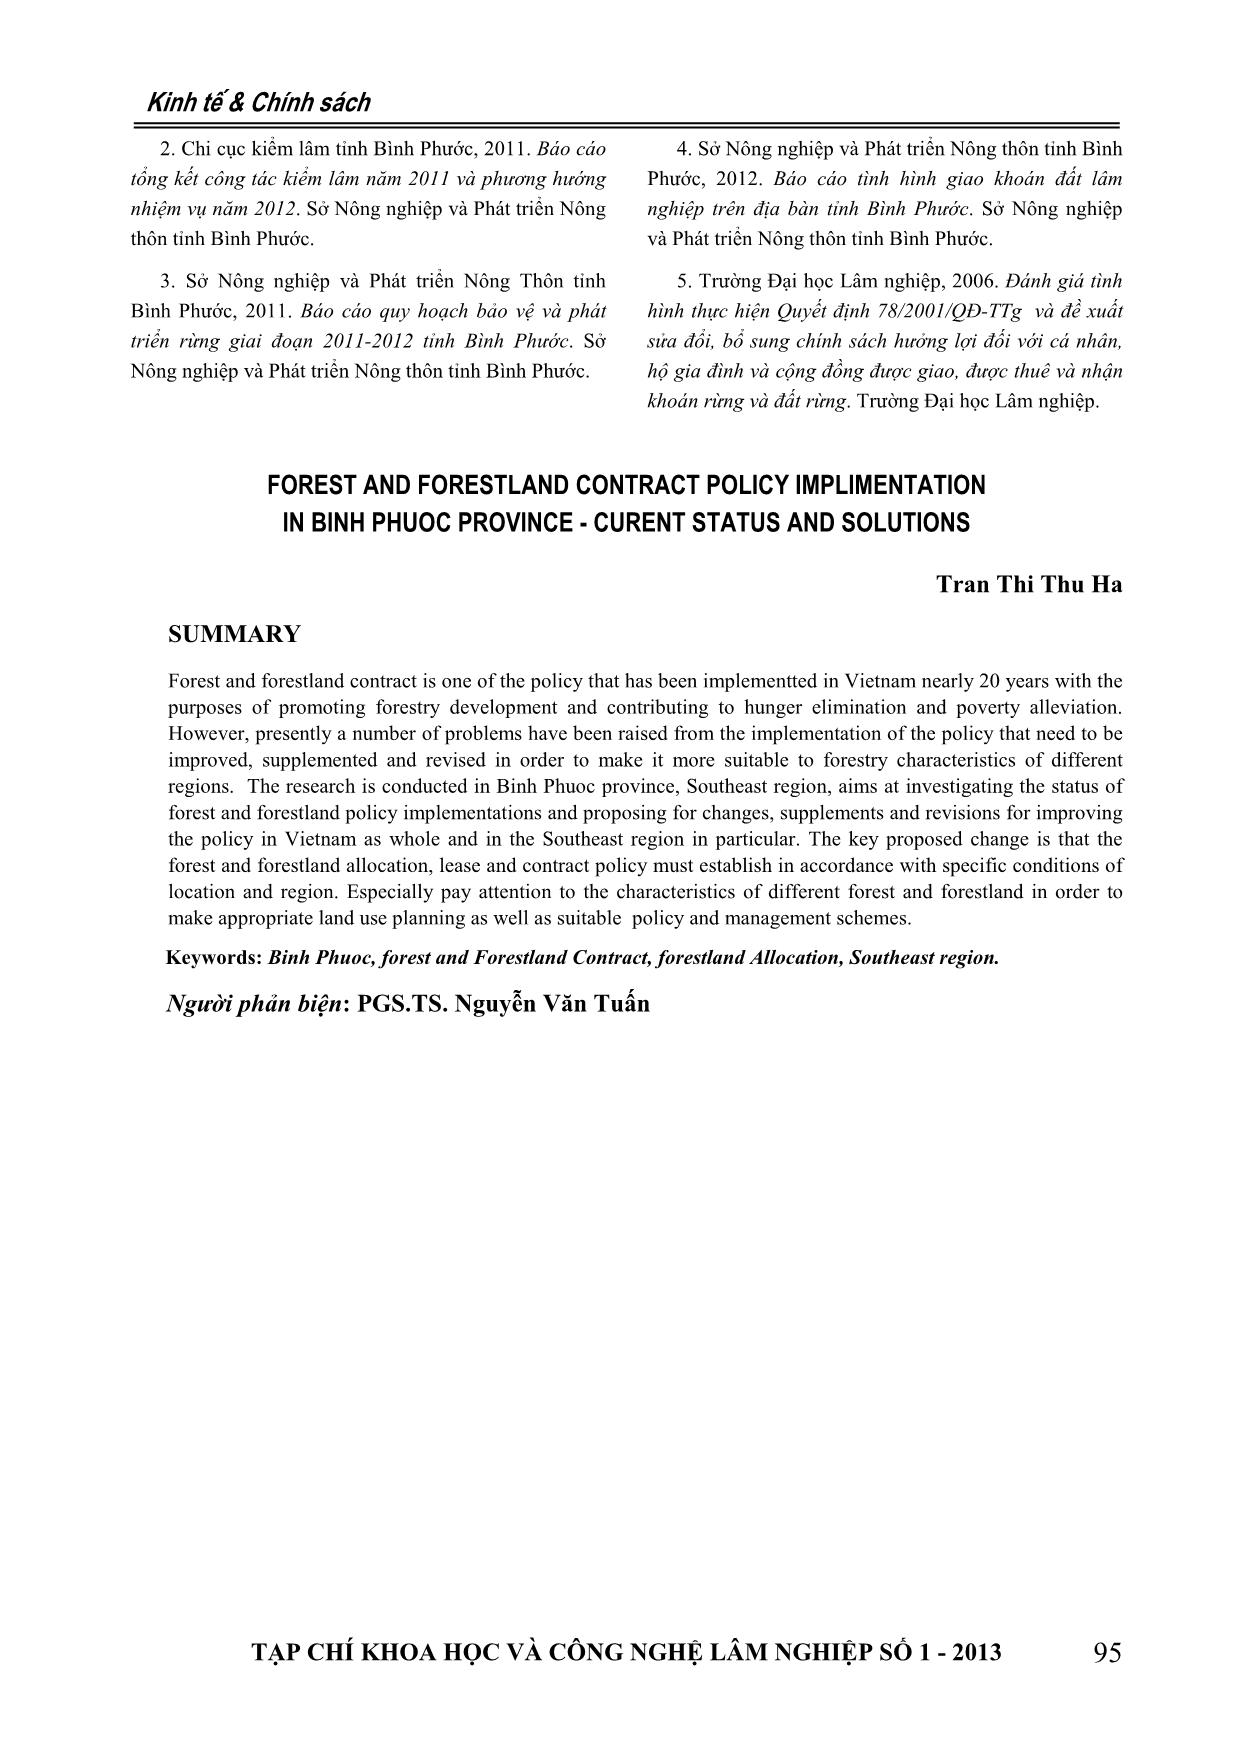 Giao khoán rừng và đất lâm nghiệp tại tỉnh Bình Phước thực trạng và giải pháp trang 8